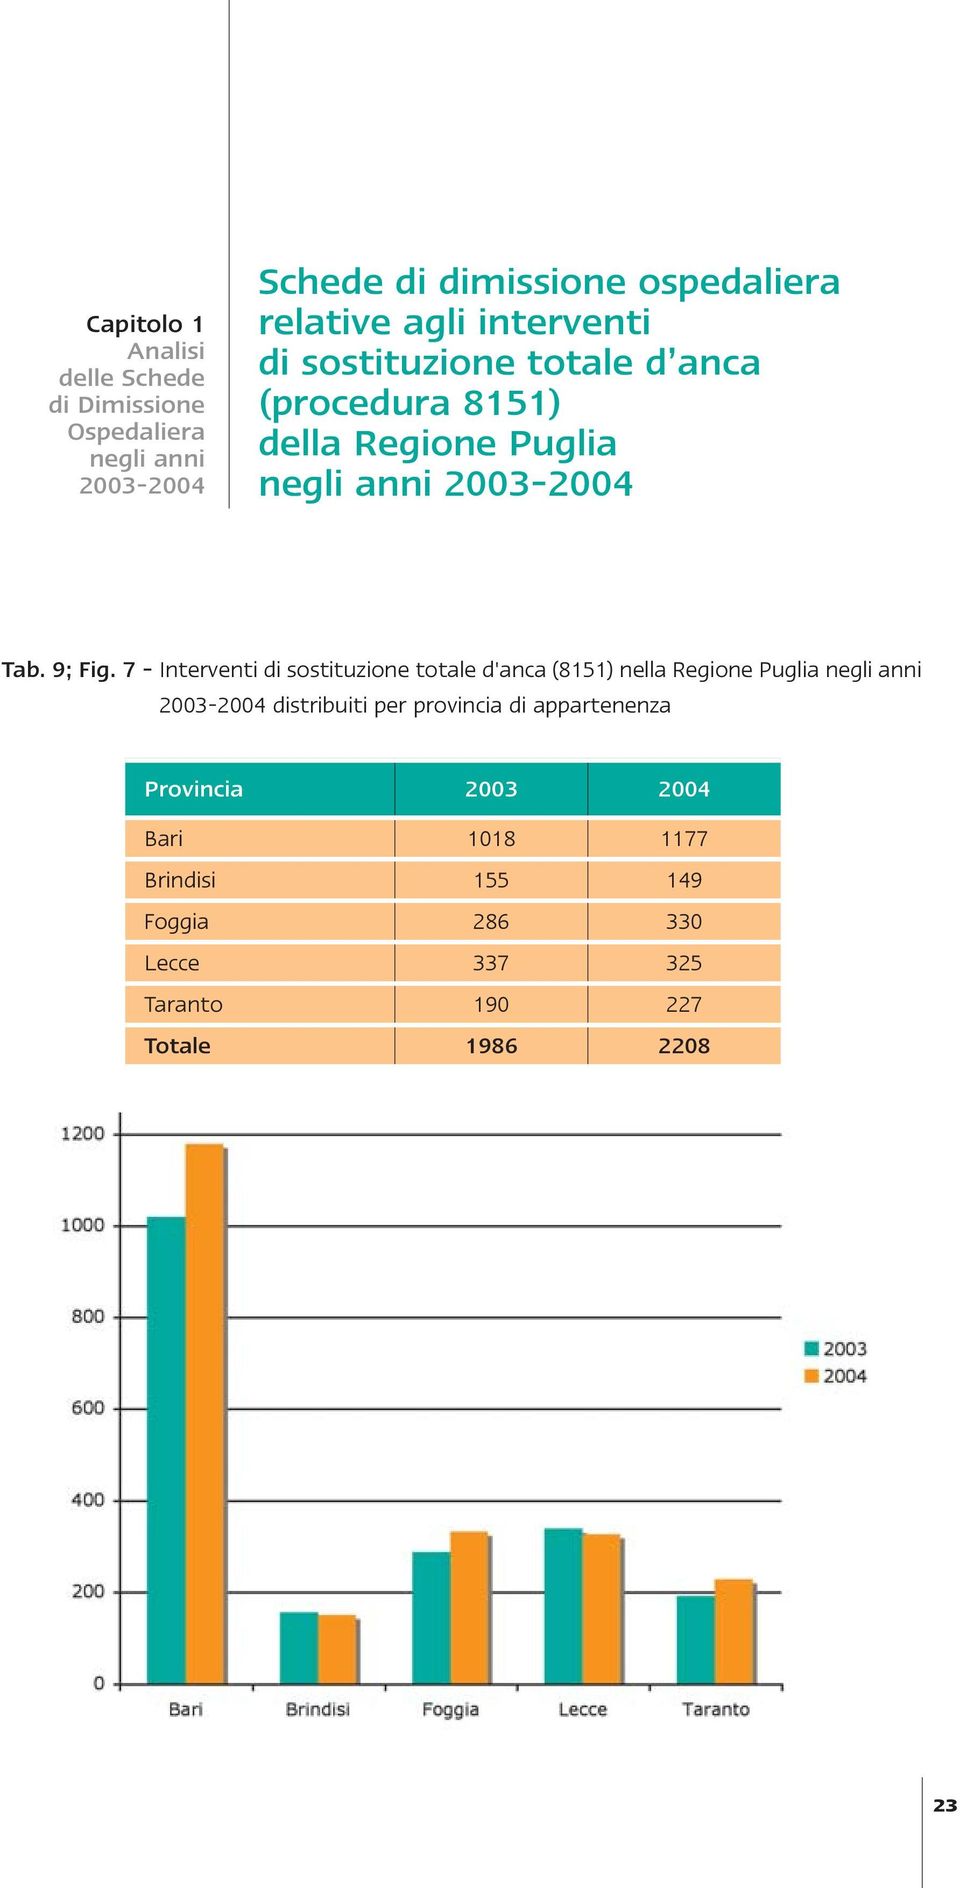 7 - Interventi di sostituzione totale d'anca (8151) nella Regione Puglia negli anni 2003-2004 distribuiti per provincia di